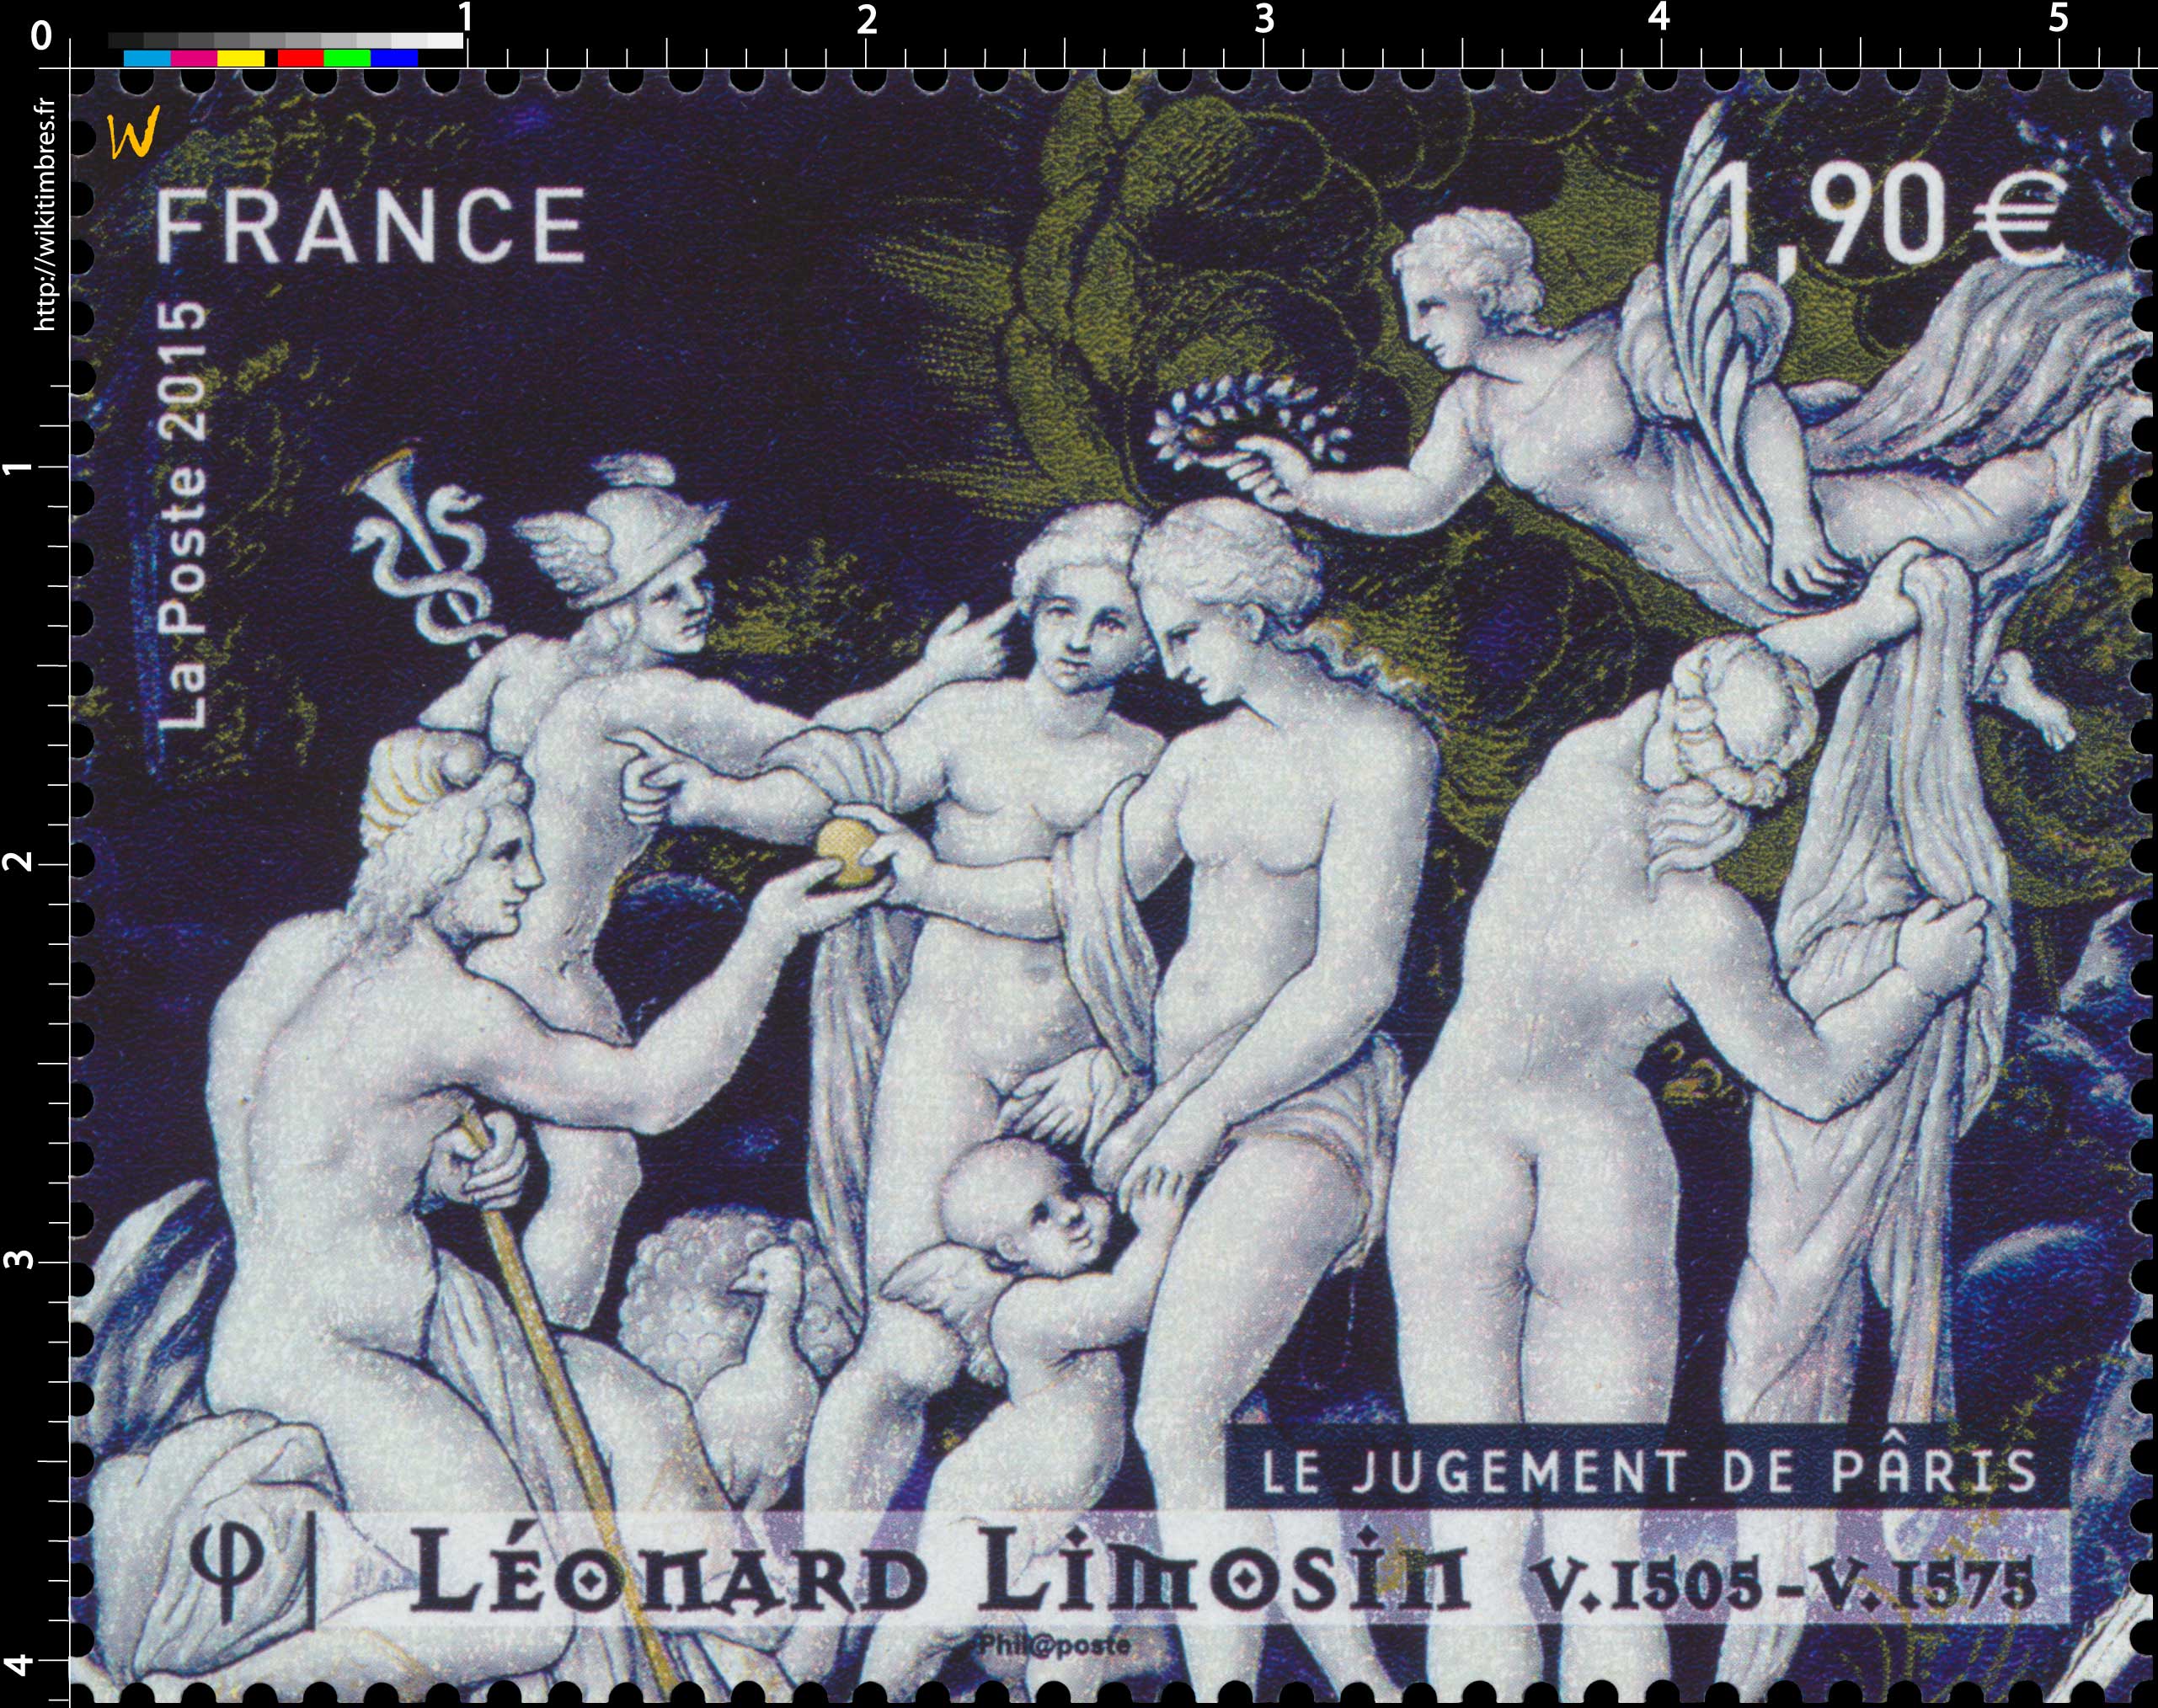 2015 Le jugement de Pâris,  Léonard LIMOSIN V.1505-V.1575